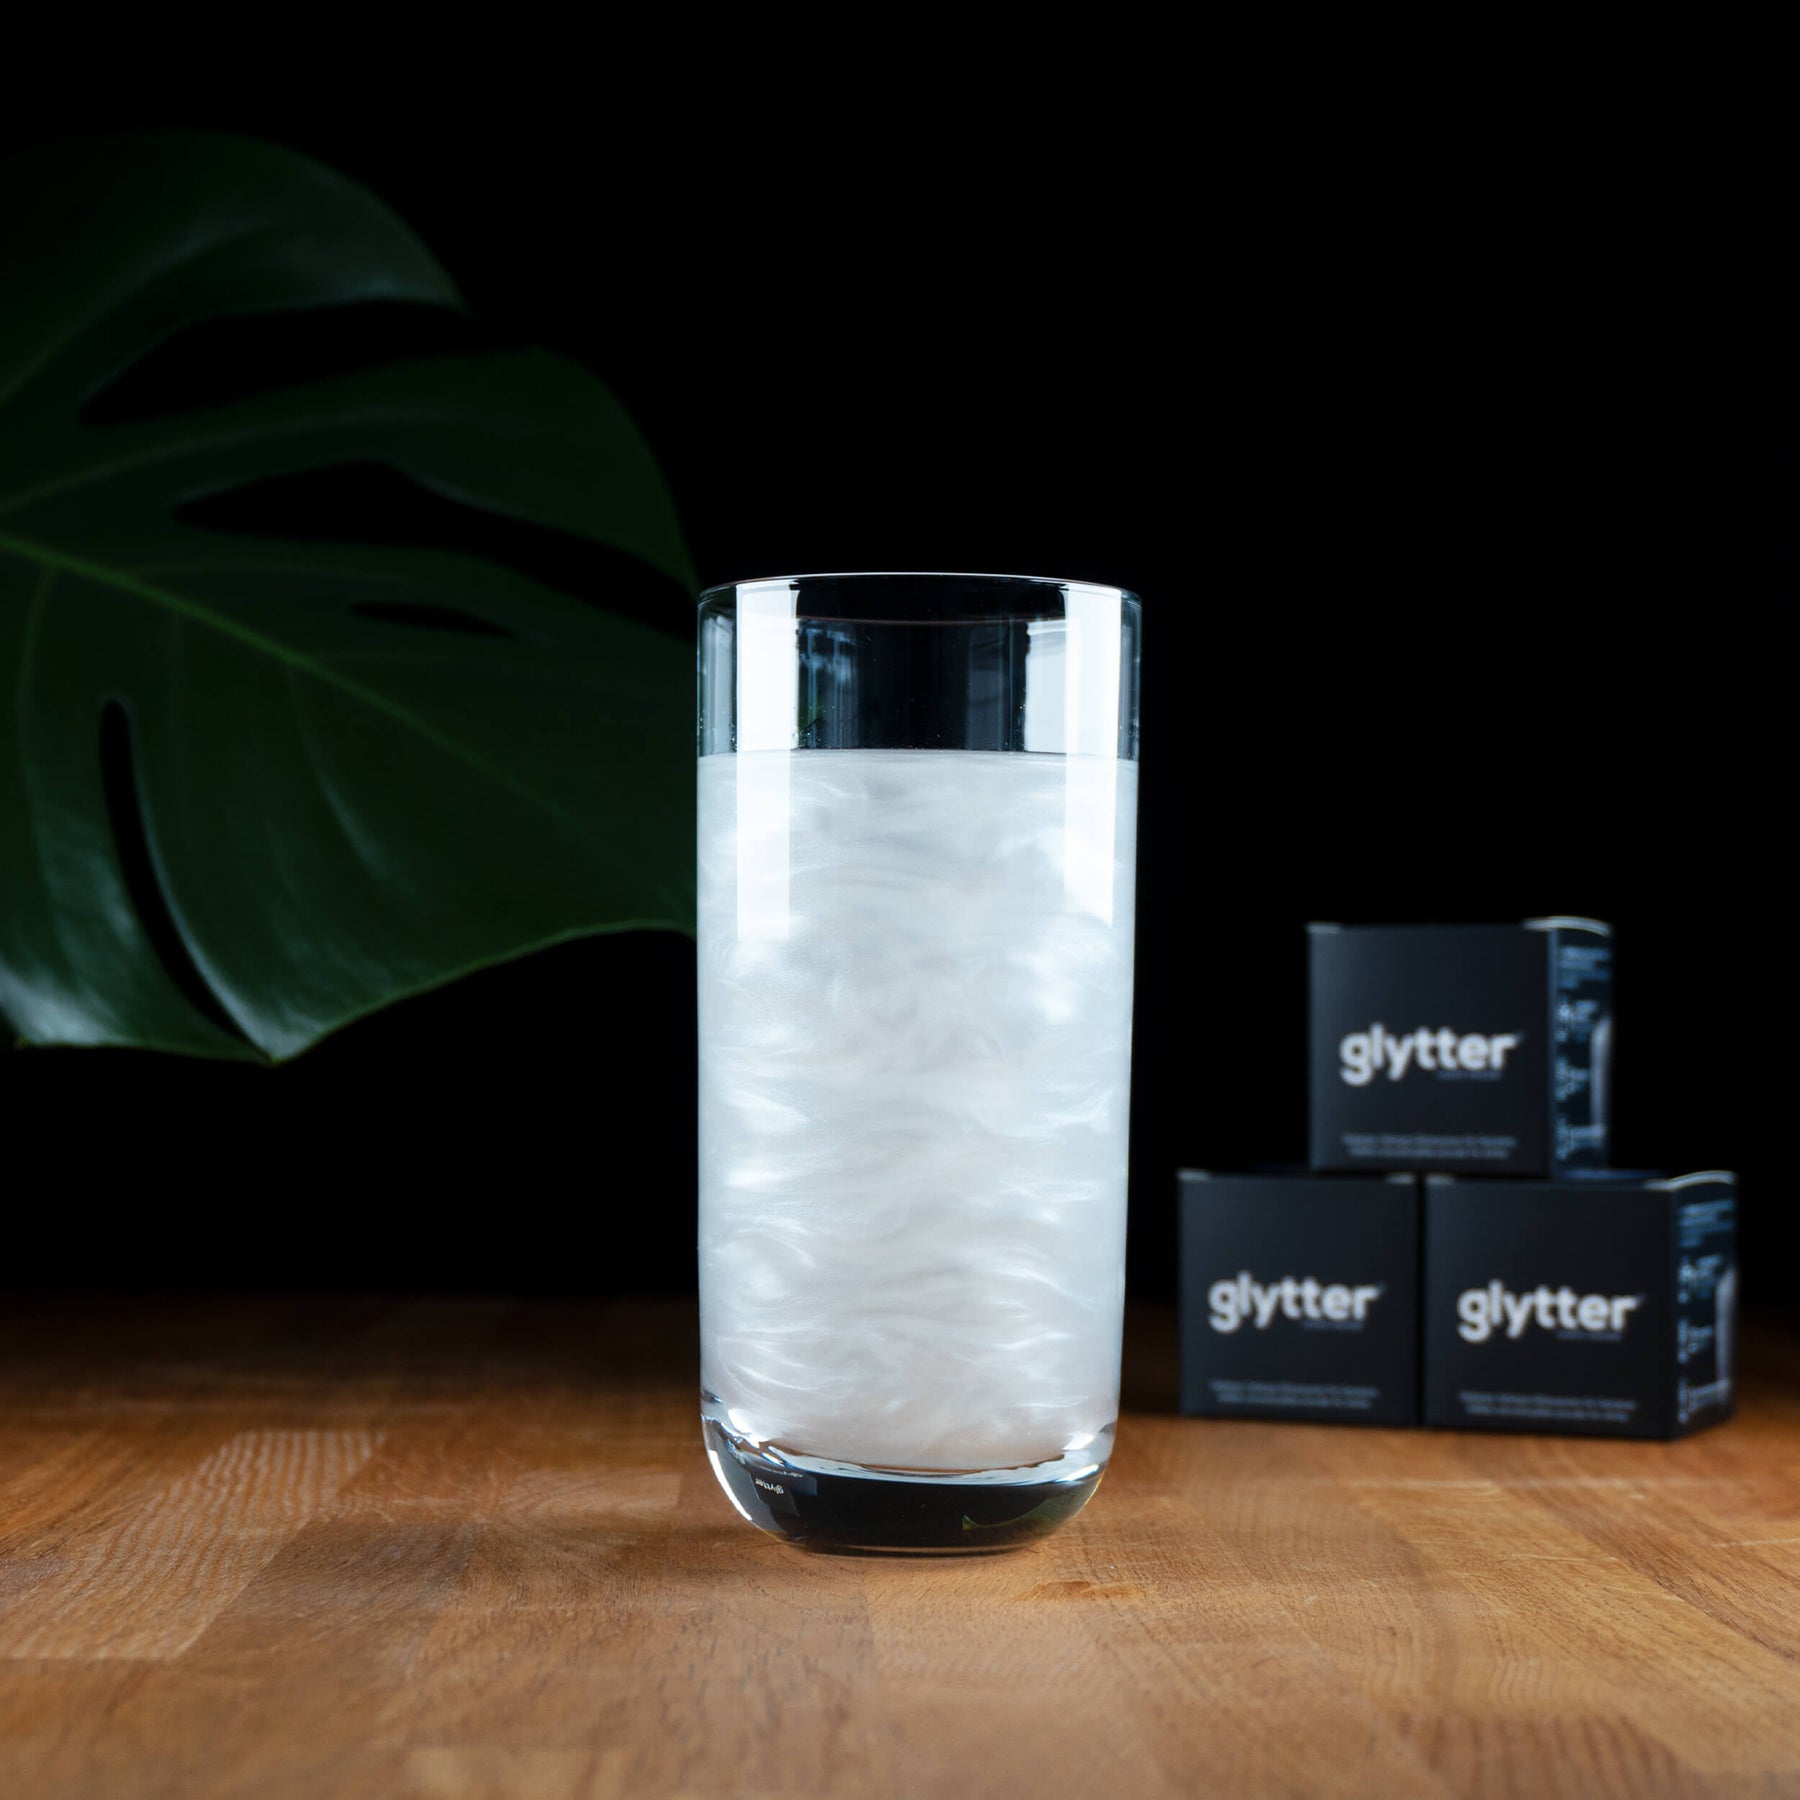 Glytterpulver - macht atemberaubenden Schimmer im Getränk - Silber (100g) - Vorteilspack